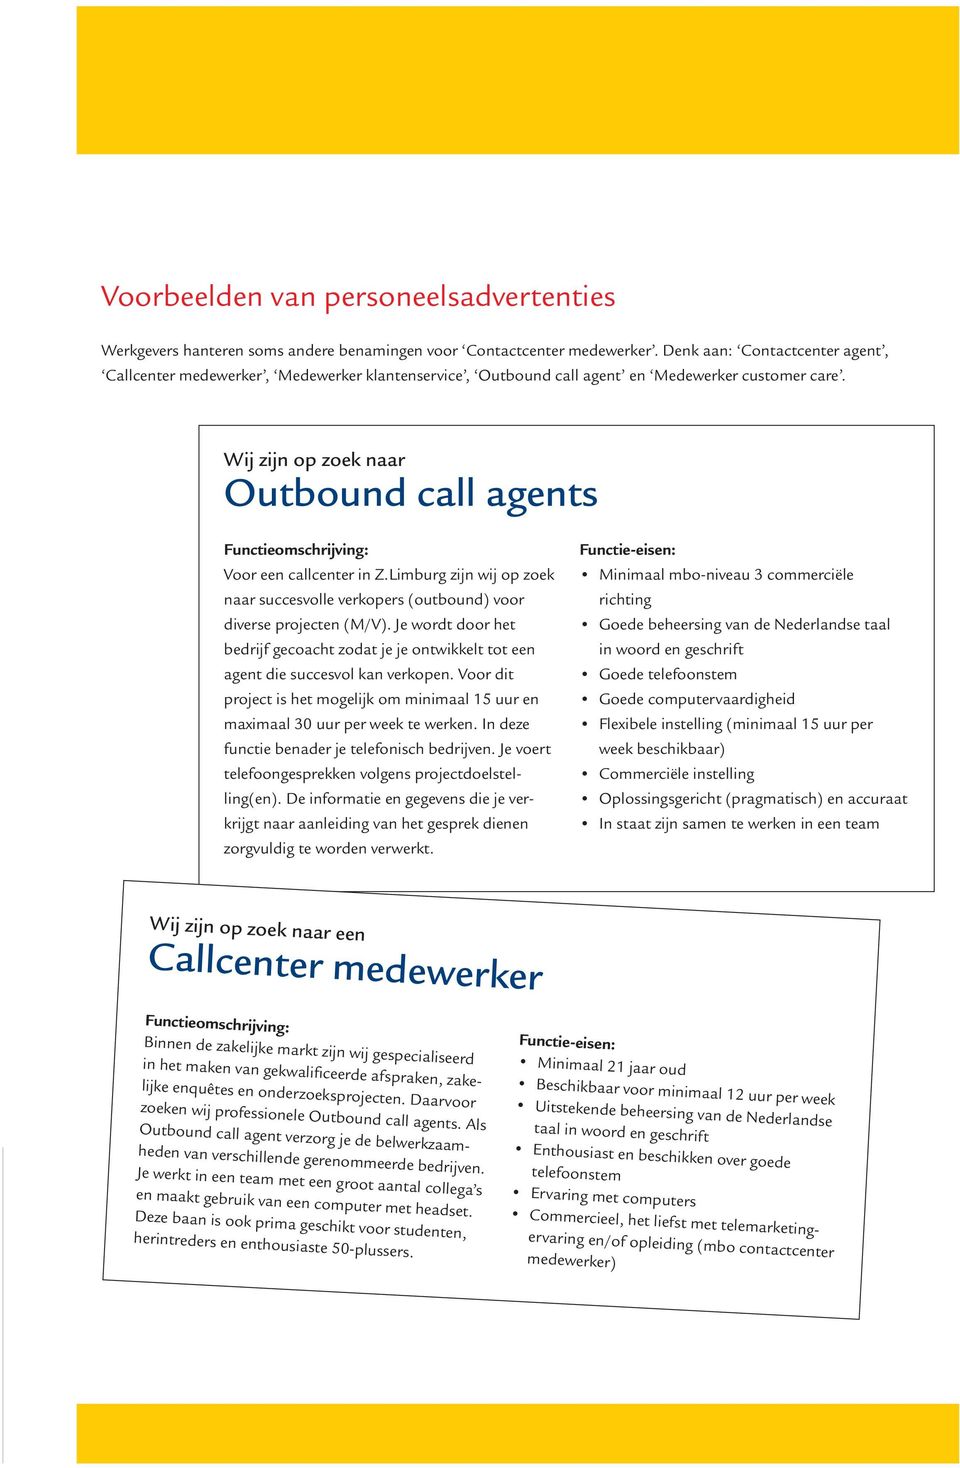 Wij zijn op zoek naar Outbound call agents Functieomschrijving: Voor een callcenter in Z.Limburg zijn wij op zoek naar succesvolle verkopers (outbound) voor diverse projecten (M/V).